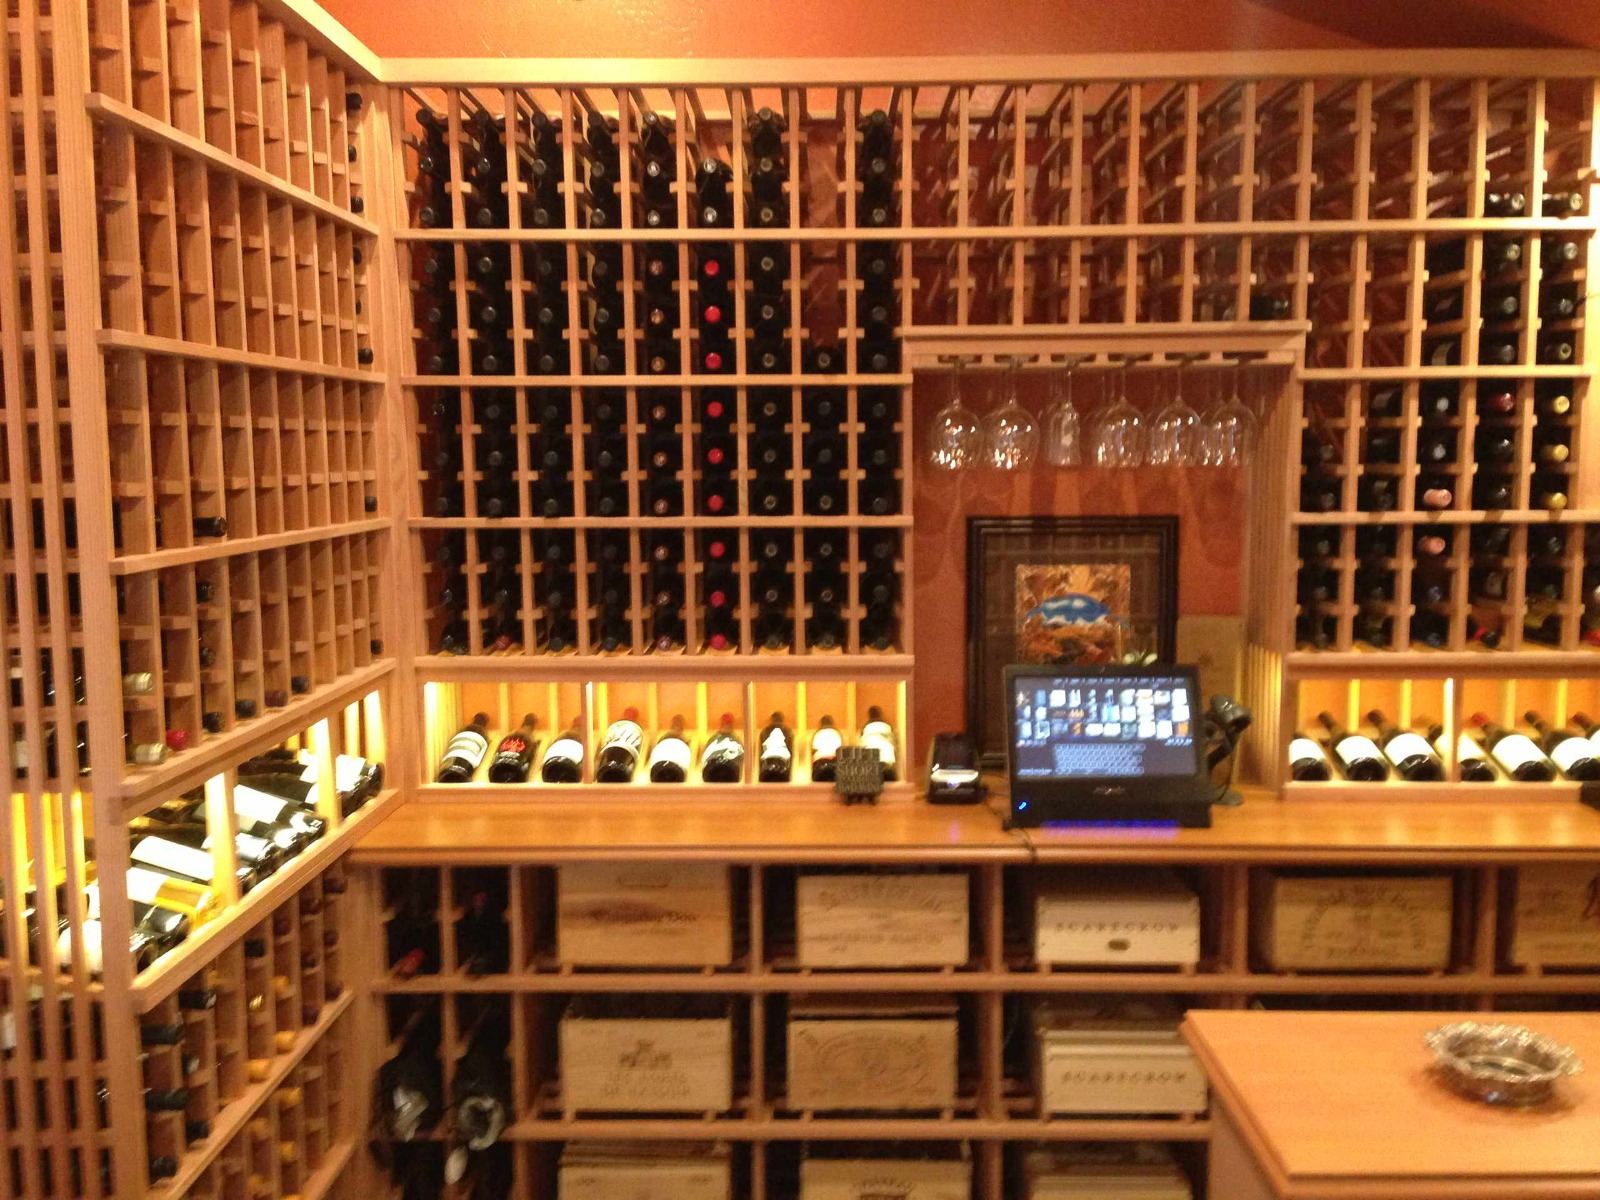 Encinitas / Del Mar, San Diego Library to Custom Wine Cellar Conversion